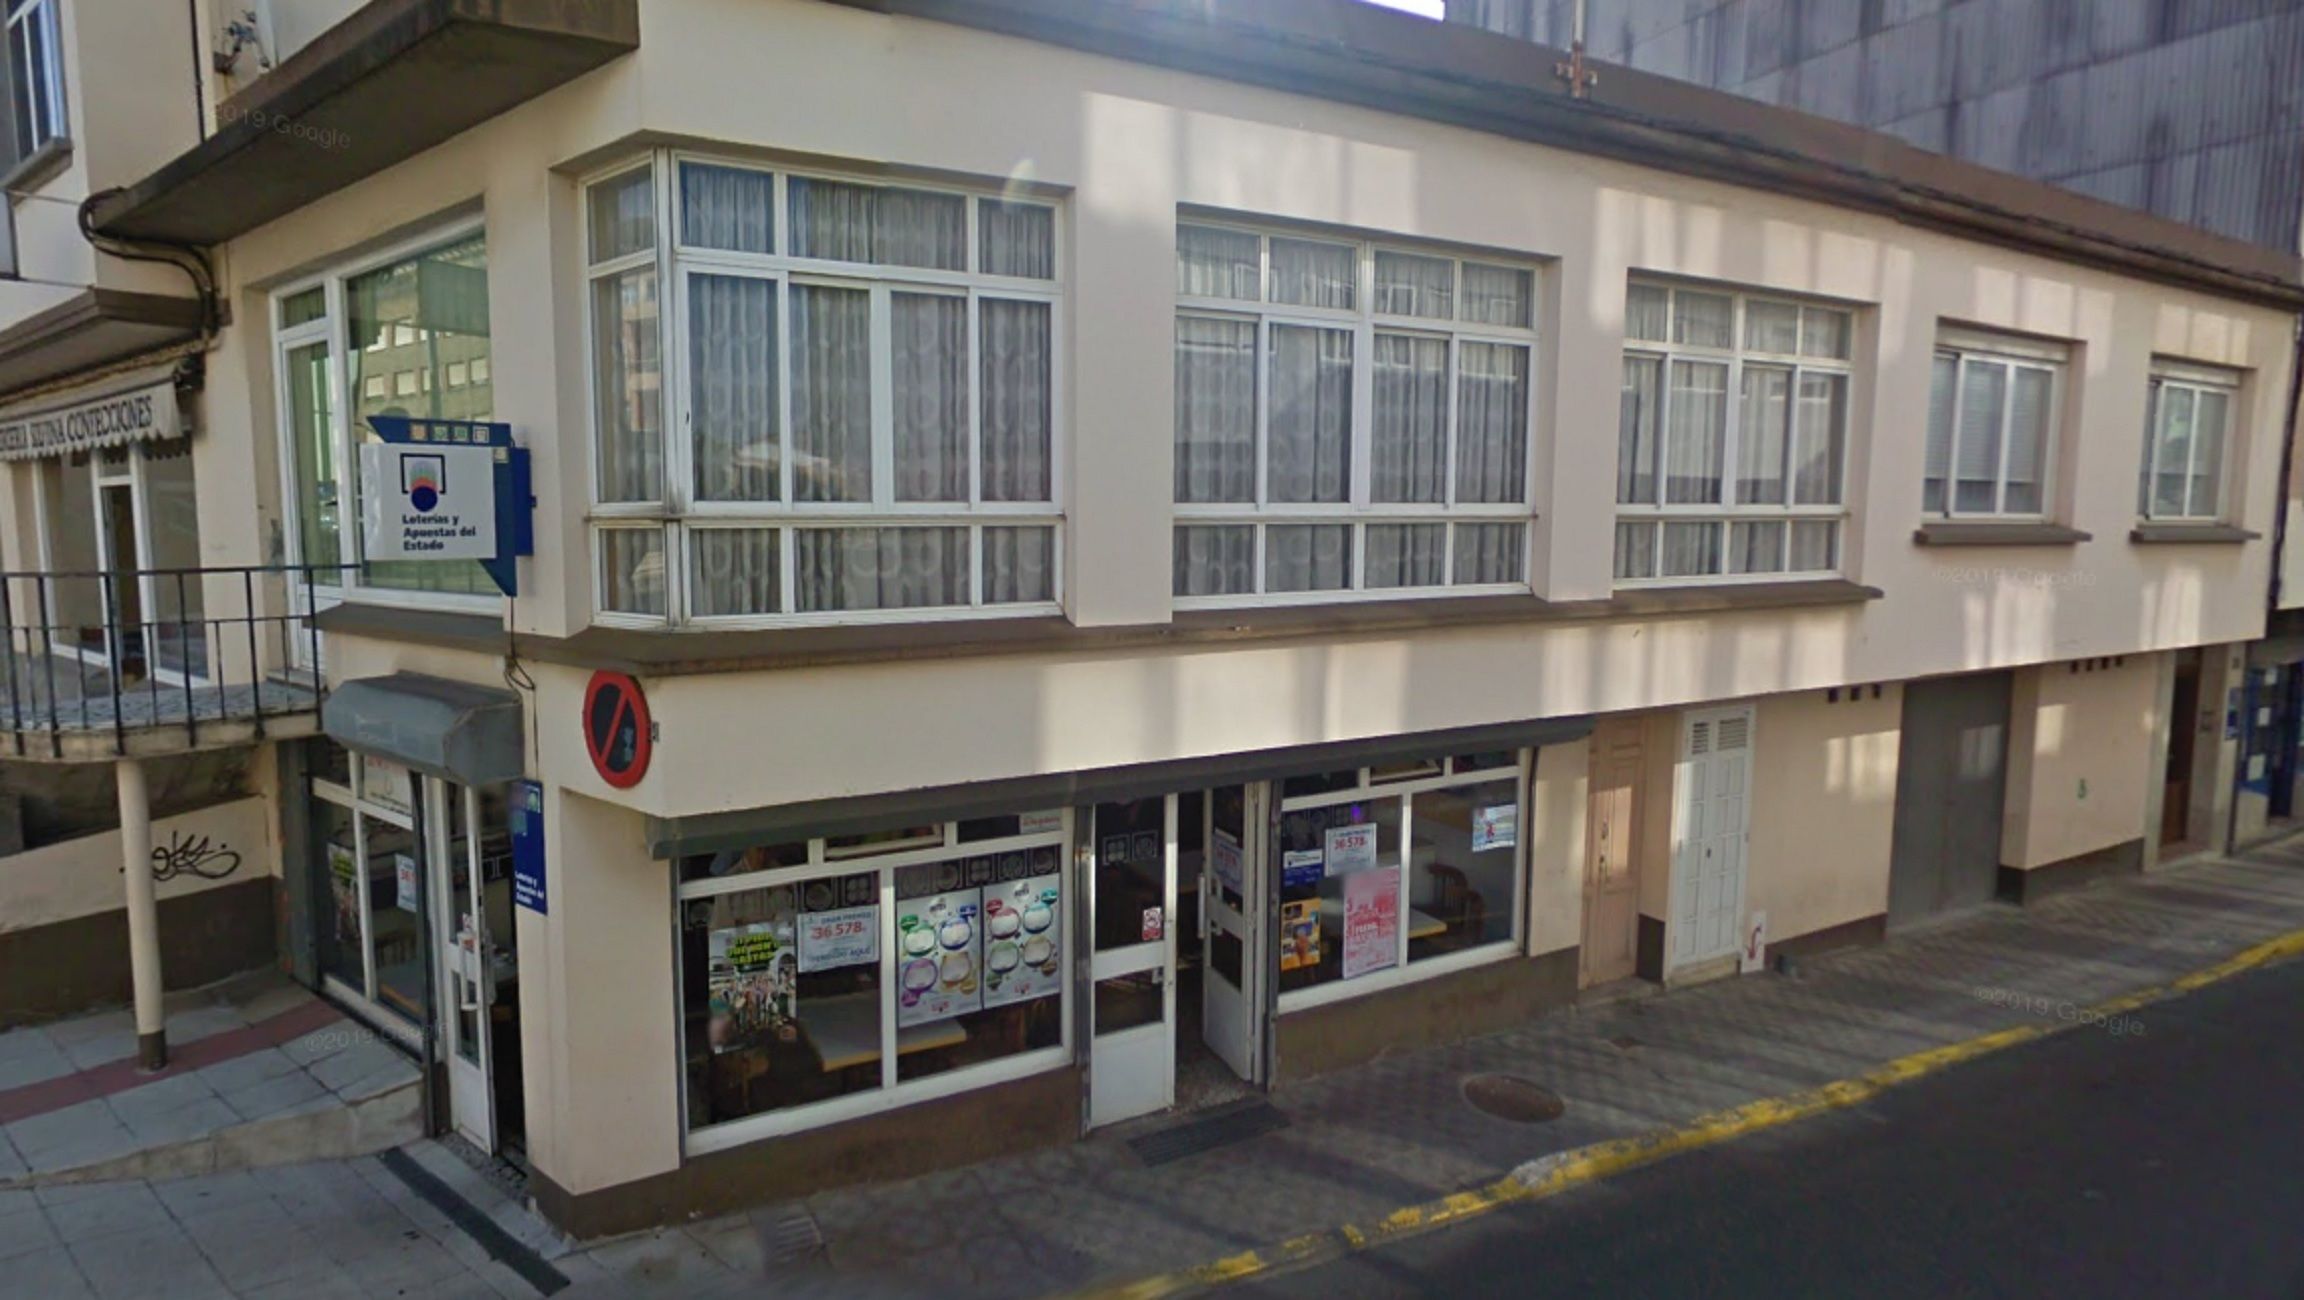 Despacho receptor loterías número 30400 Freixeiro Narón A Coruña / Google Maps